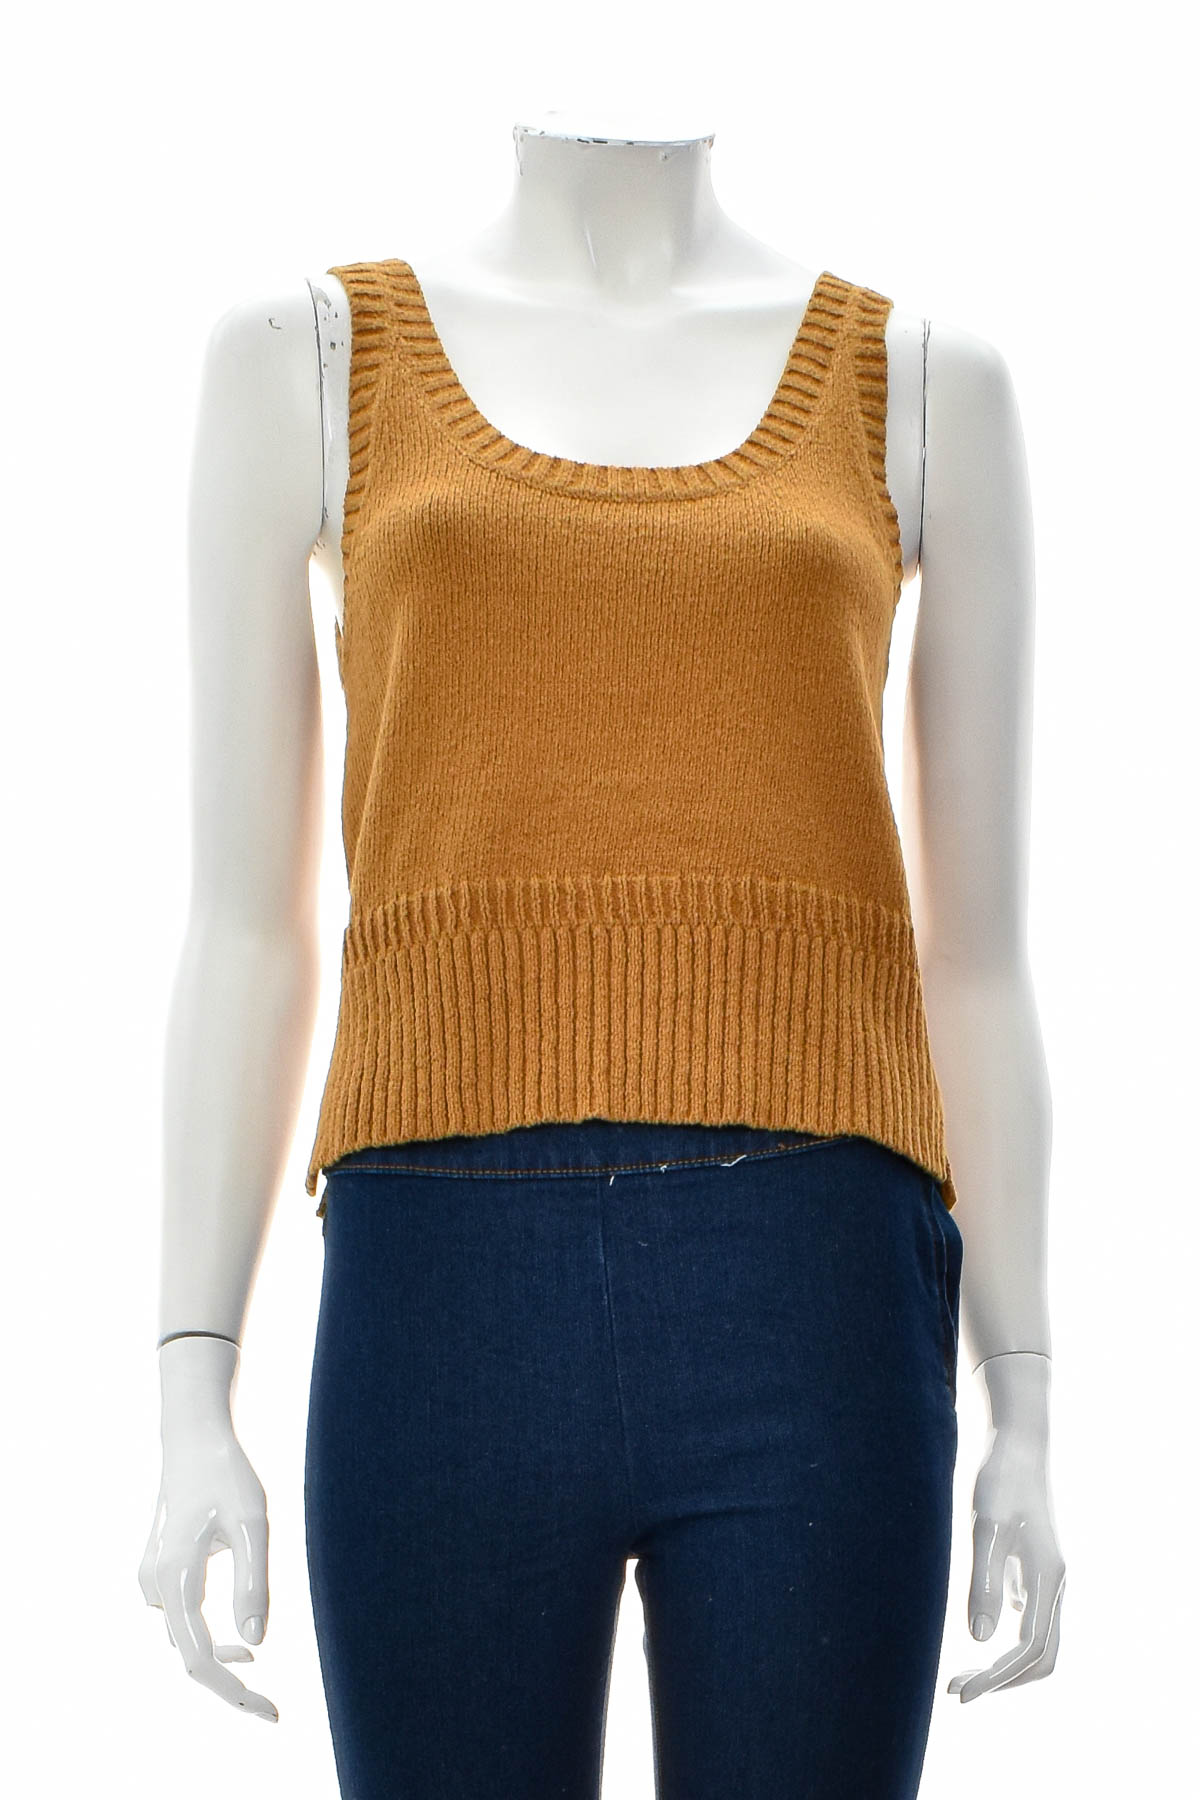 Women's sweater - Madewell - 0